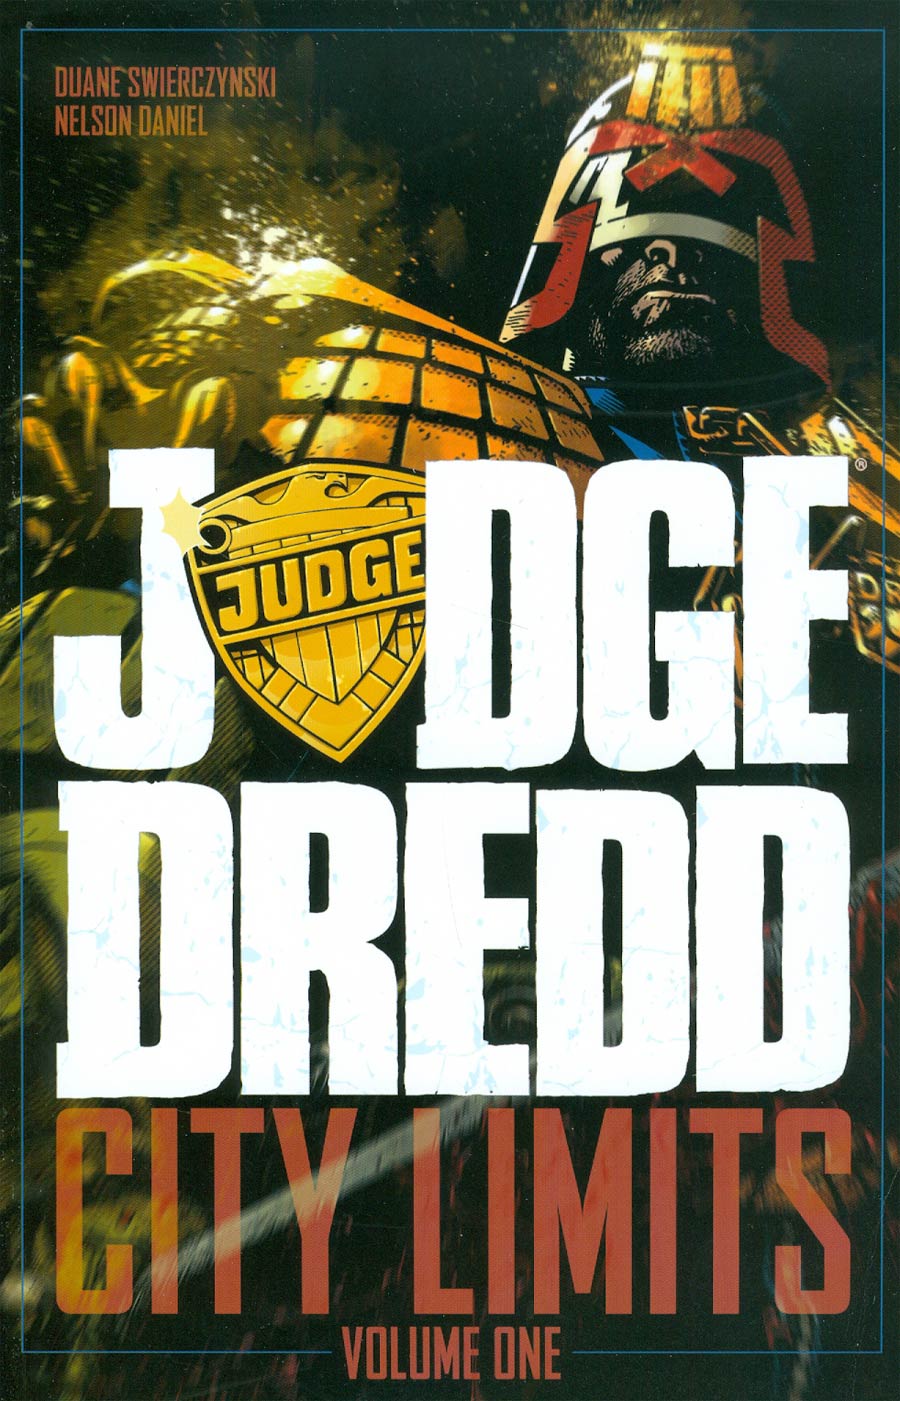 Judge Dredd City Limits Vol 1 TP